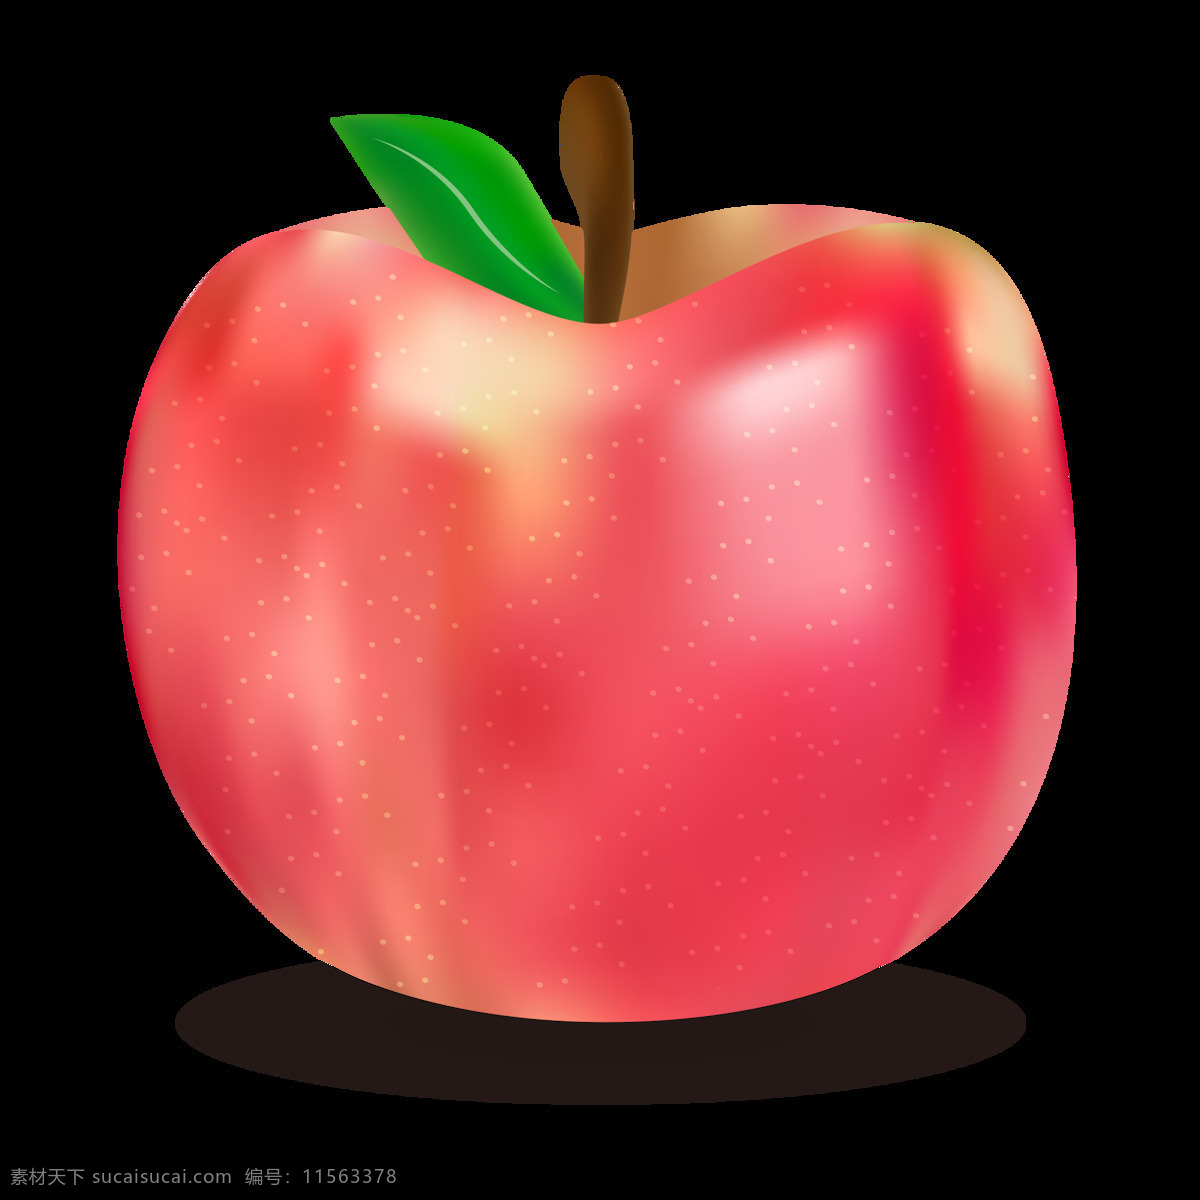 圣诞 写实 逼真 矢量 插图 装饰 元素 红 平安 果 苹果 装饰元素 平安果 写实风格